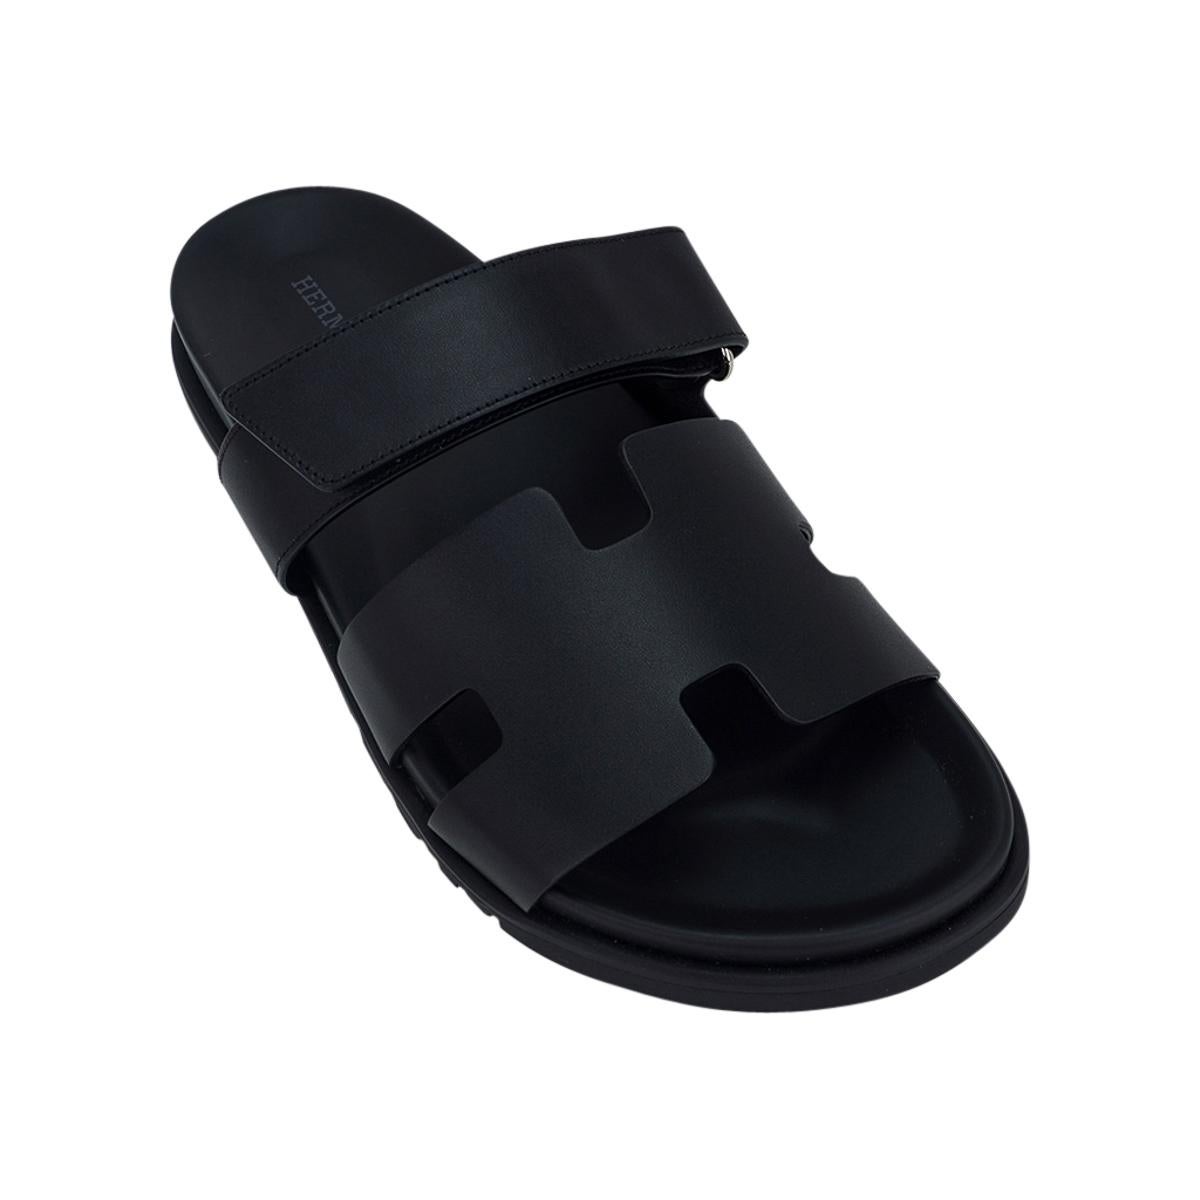 Mightychic bietet ein Paar der limitierten Auflage der Hermes Men's Chypre Sandal in Noir an.
Schwarzes Kalbsleder mit schwarzer anatomischer Innensohle und schwarzer Gummisohle mit H-Prägung.
Der Riemen über dem Fuß ist mit einem Klettverschluss